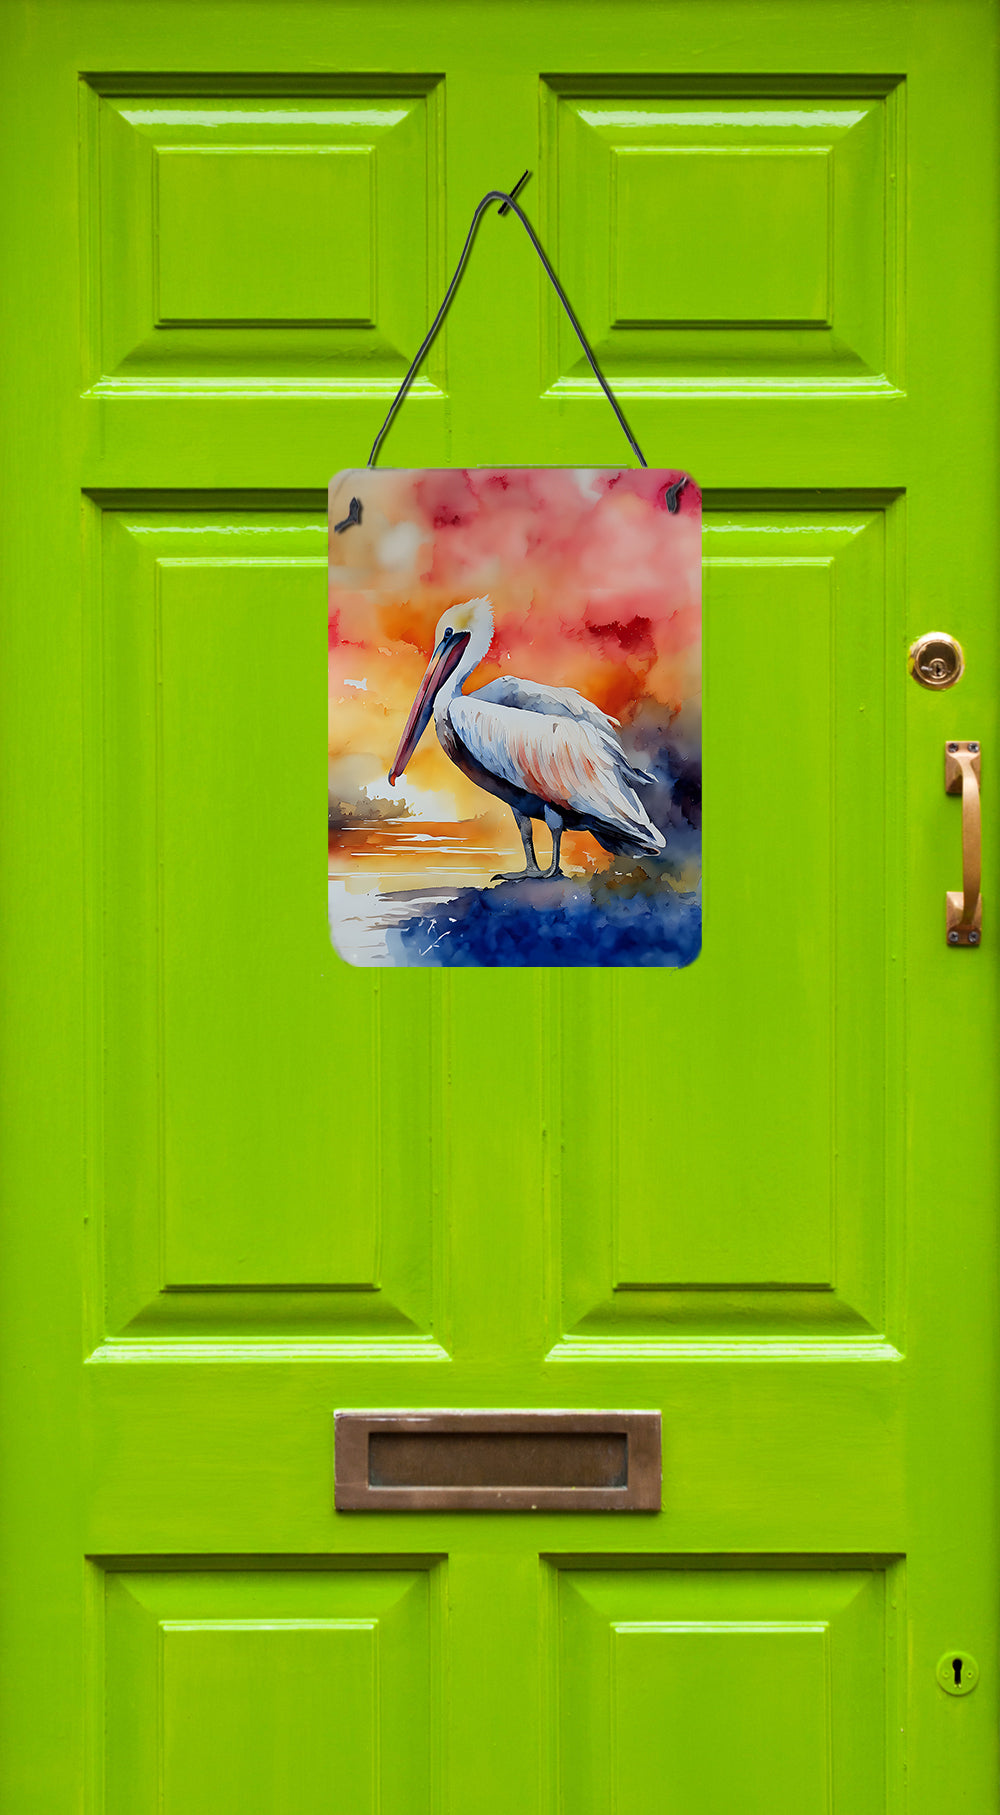 Buy this Pelican Wall or Door Hanging Prints